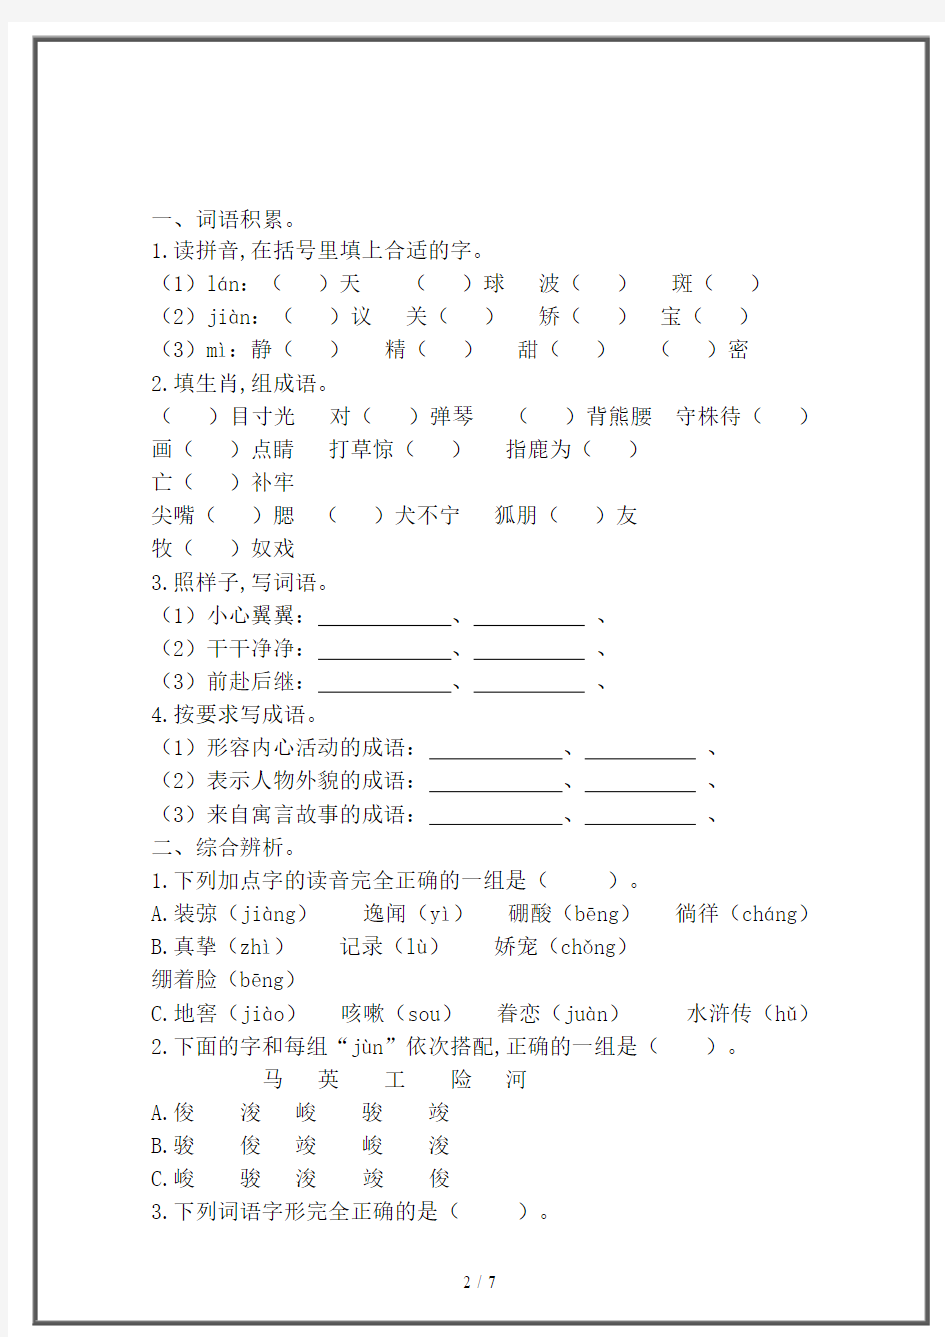 【2020】最新小学六年级语文字词专项训练(附答案)